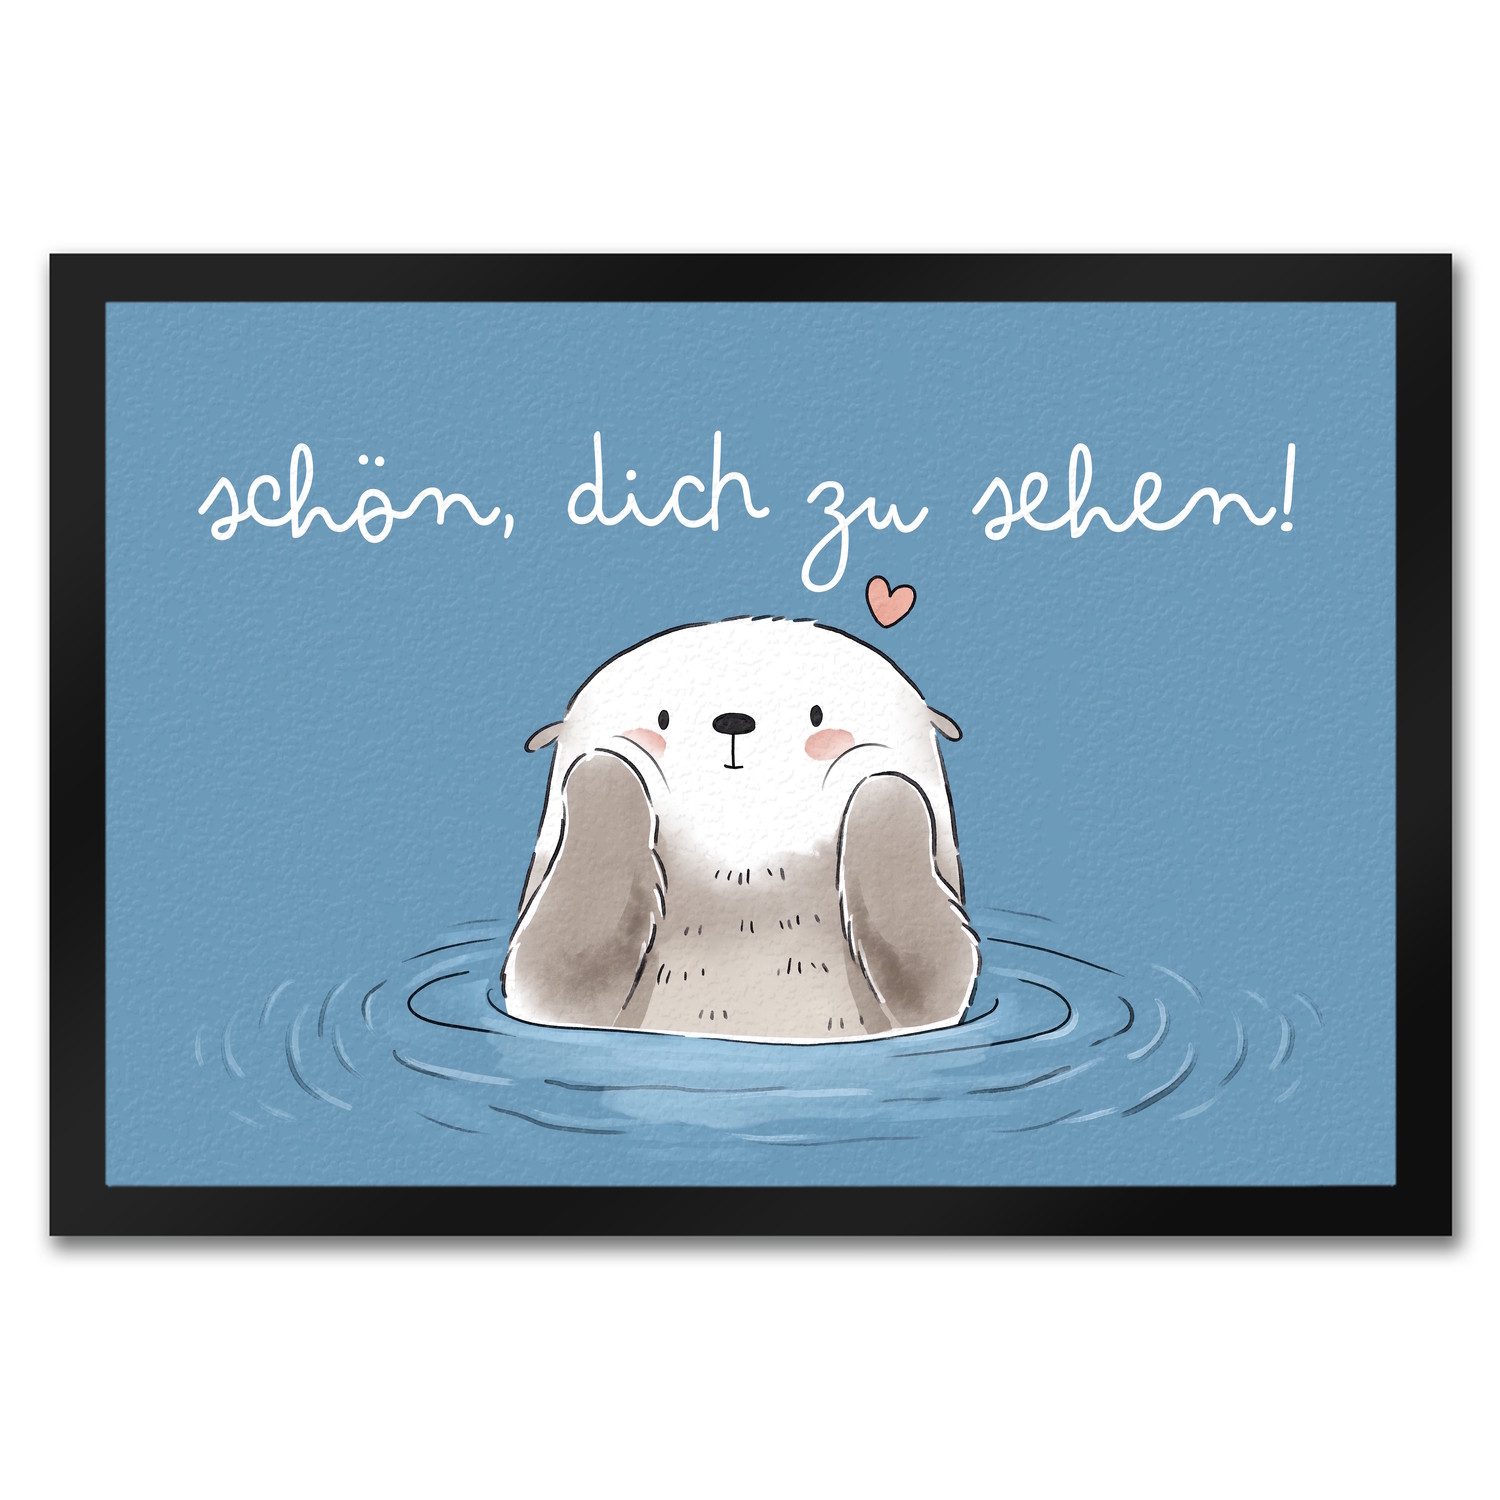 Fußmatte Otter Fußmatte in 35x50 cm mit Spruch Schön dich zu sehen, speecheese